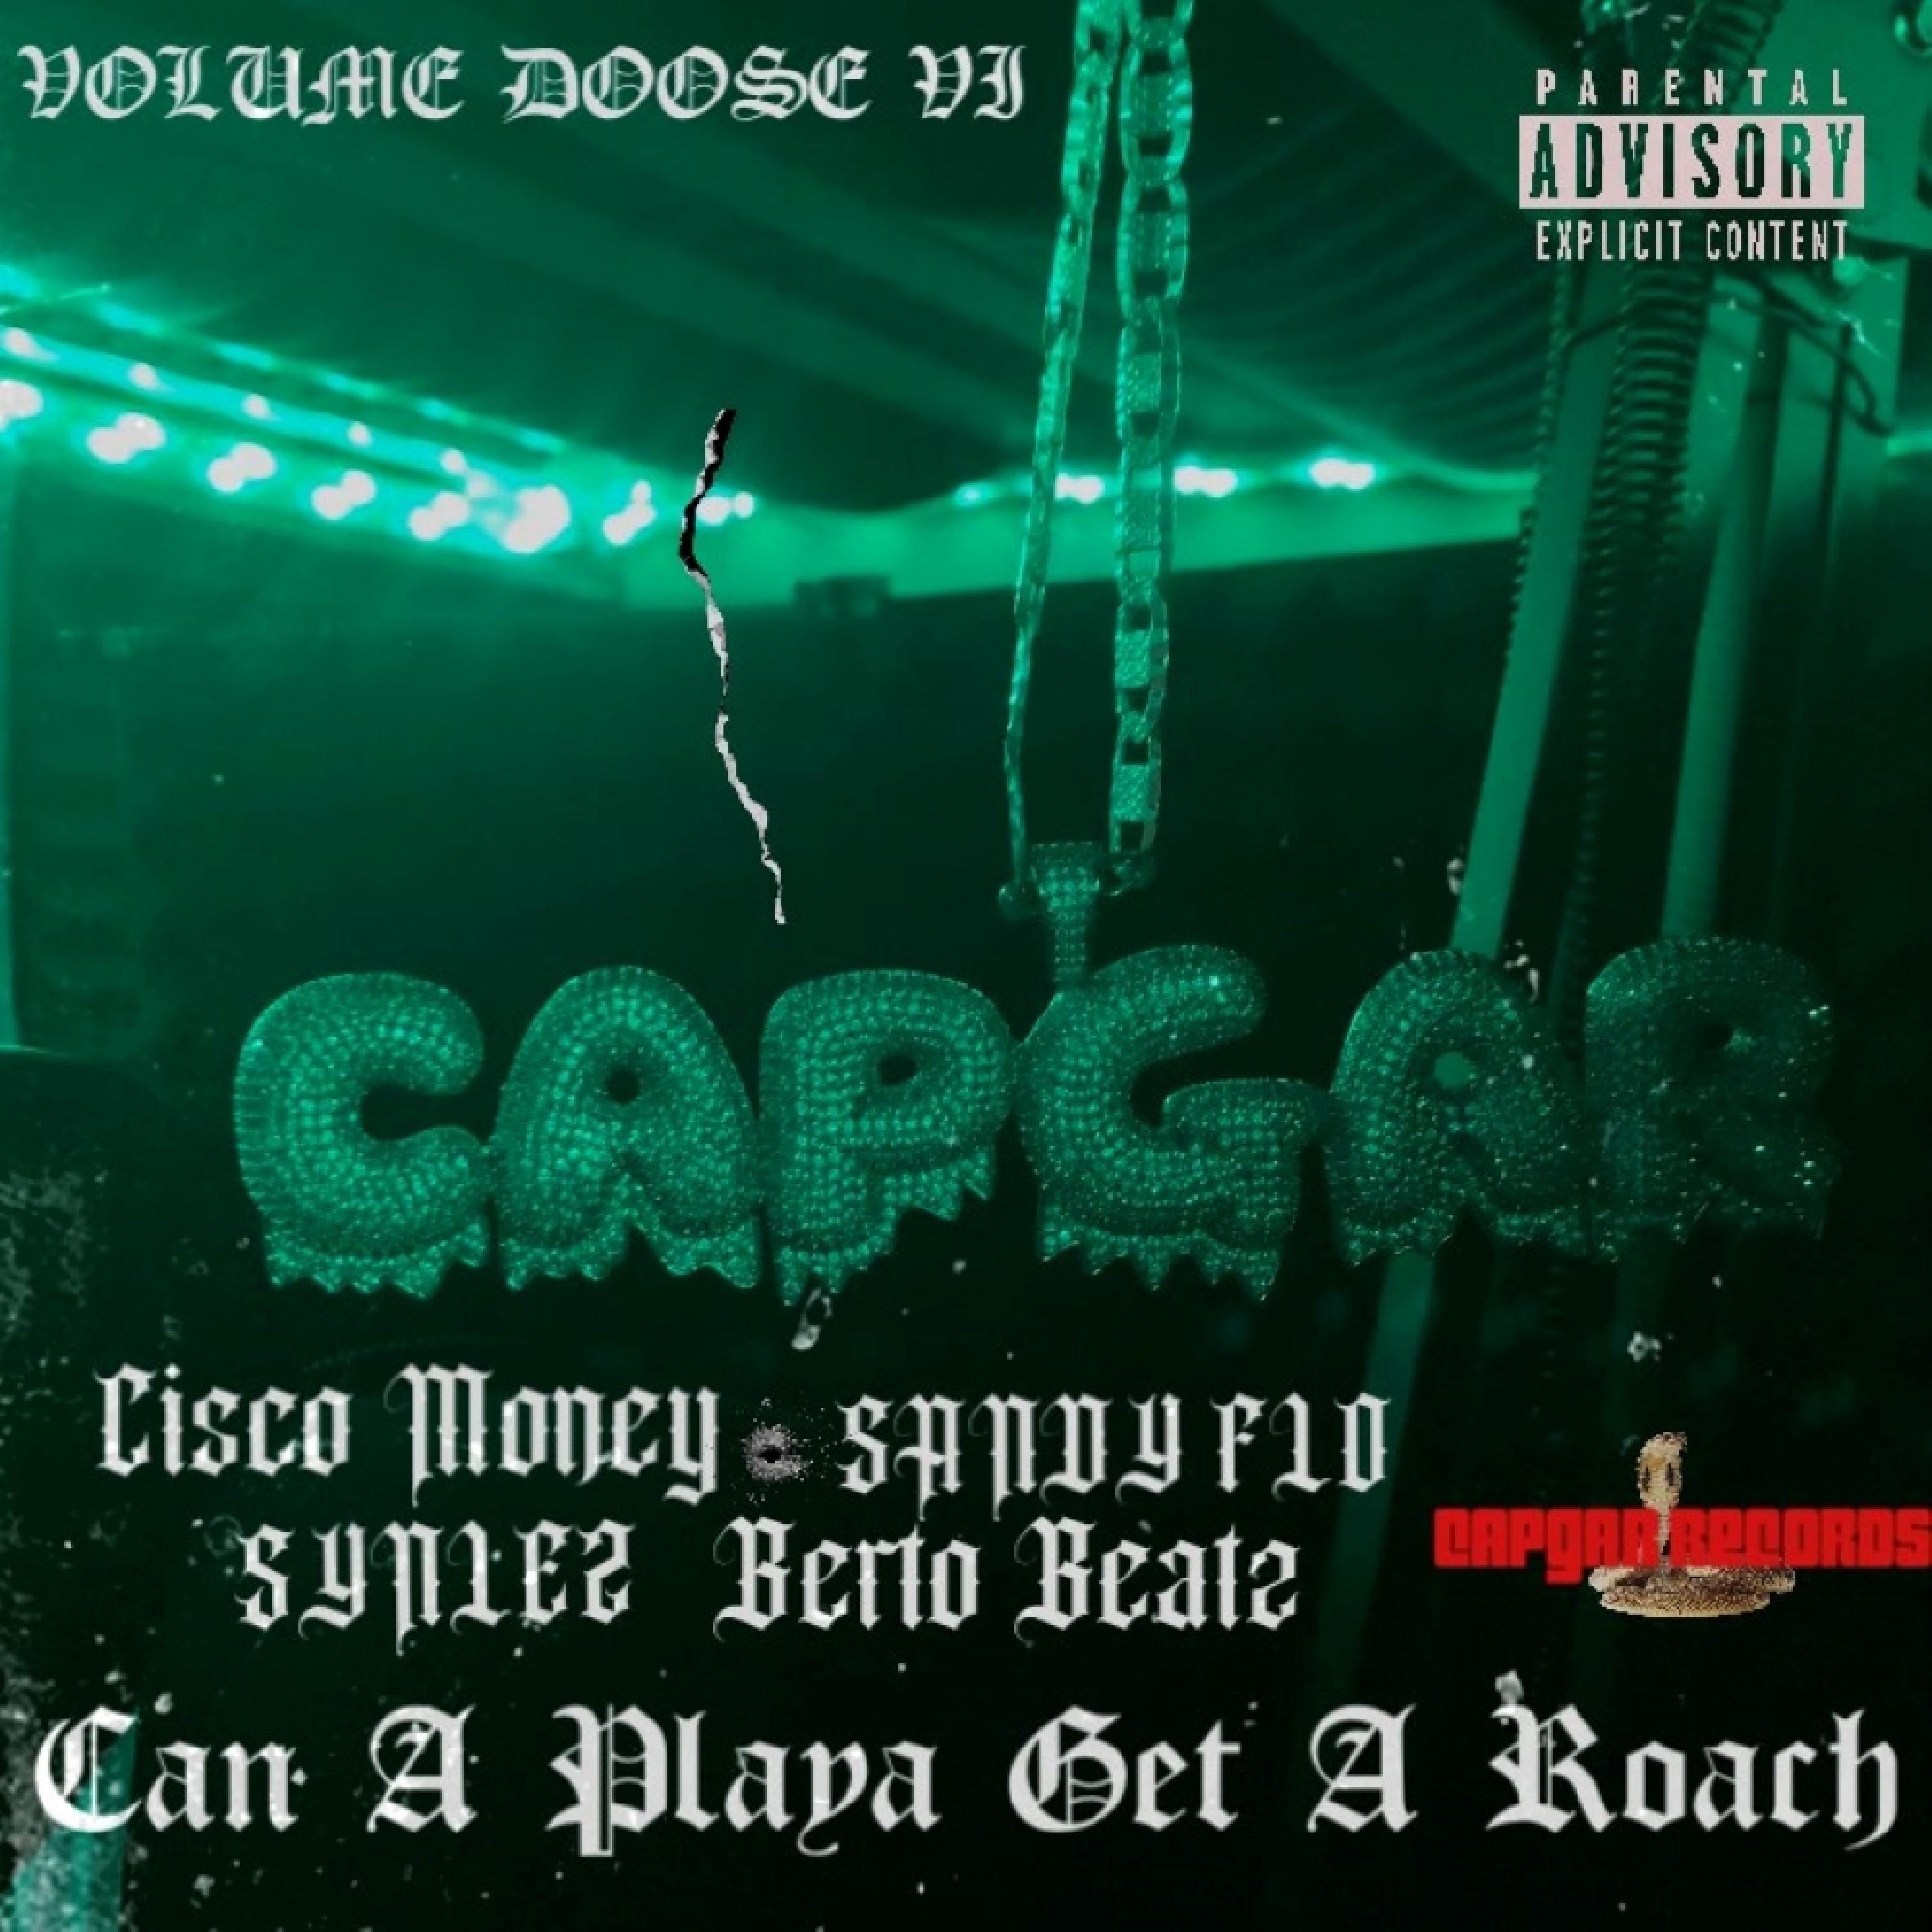 Cisco Money - COMO VEZ (feat. SANDY FLO)